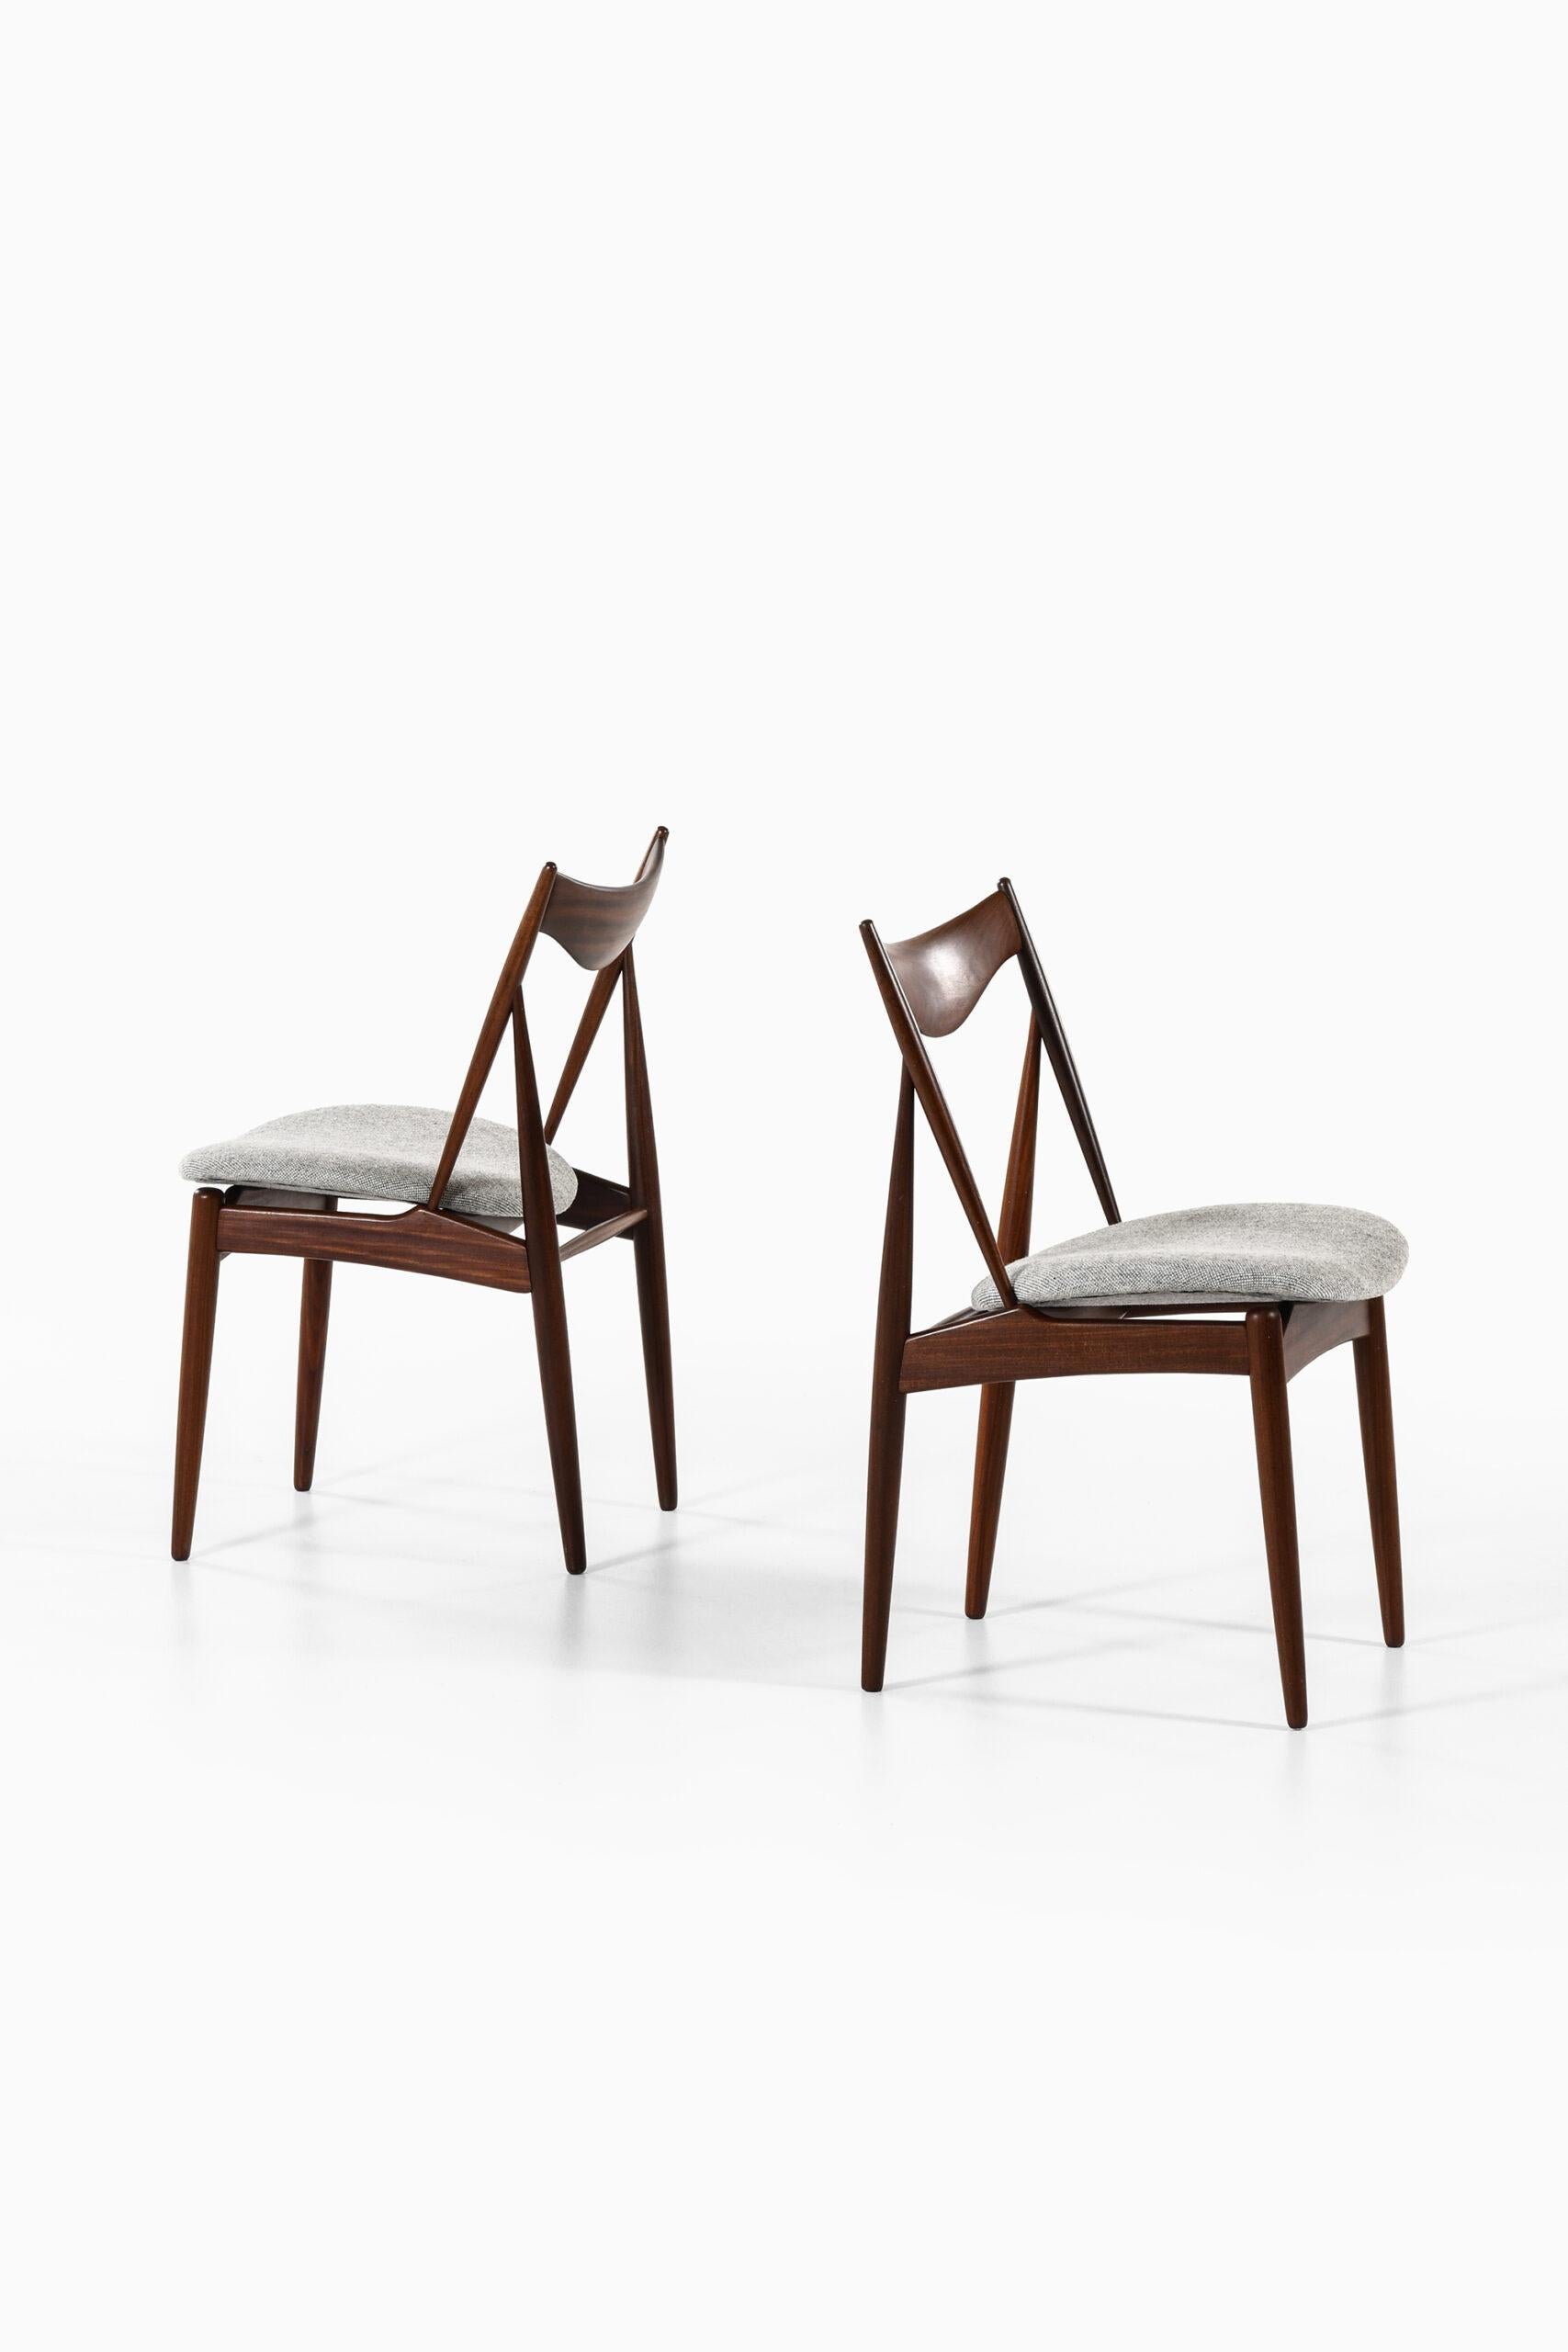 Sehr seltener Satz von 10 Esszimmerstühlen, entworfen von Kurt Østervig. Produziert von Bramin in Dänemark.